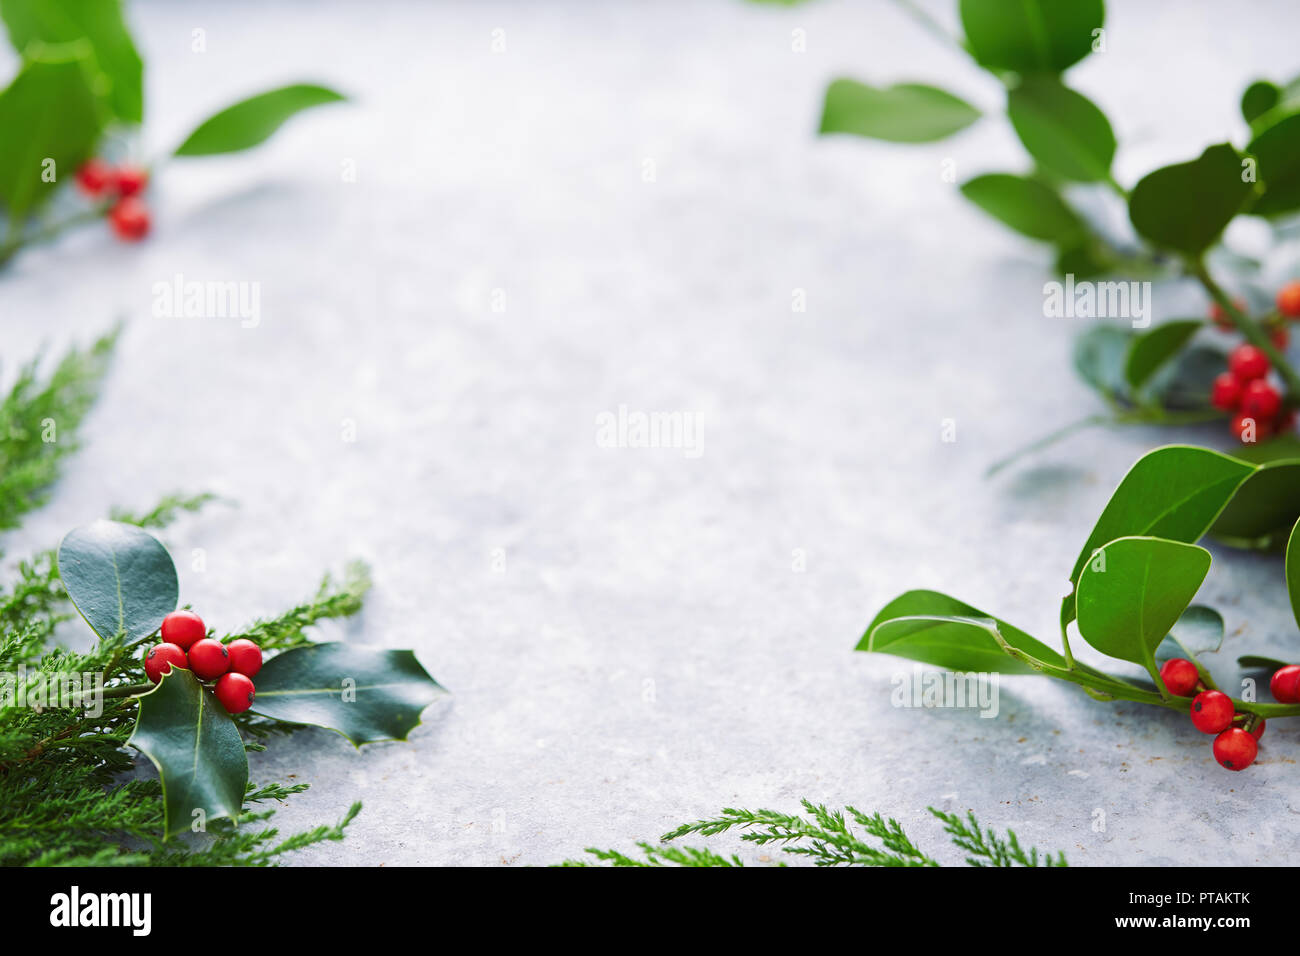 Décorations de Noël, des feuilles de houx avec les fruits rouges. Le houx (Ilex aquifolium européenne) Feuilles et fruits. Banque D'Images